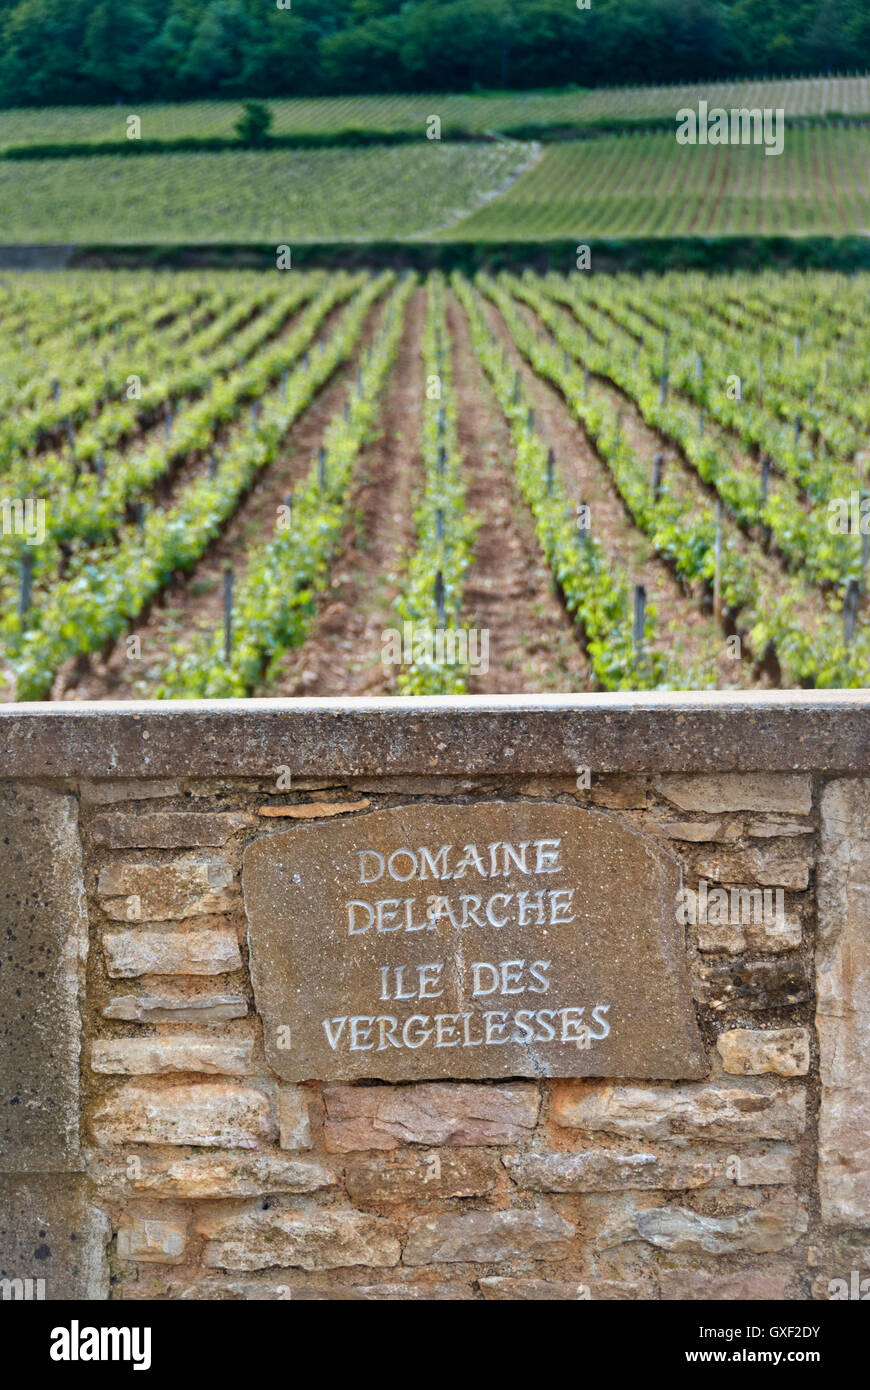 Vignoble et plaque pour l'amende vigneron Domaine Delarche Ile des Vergelesses Côte d'Or Bourgogne France Banque D'Images